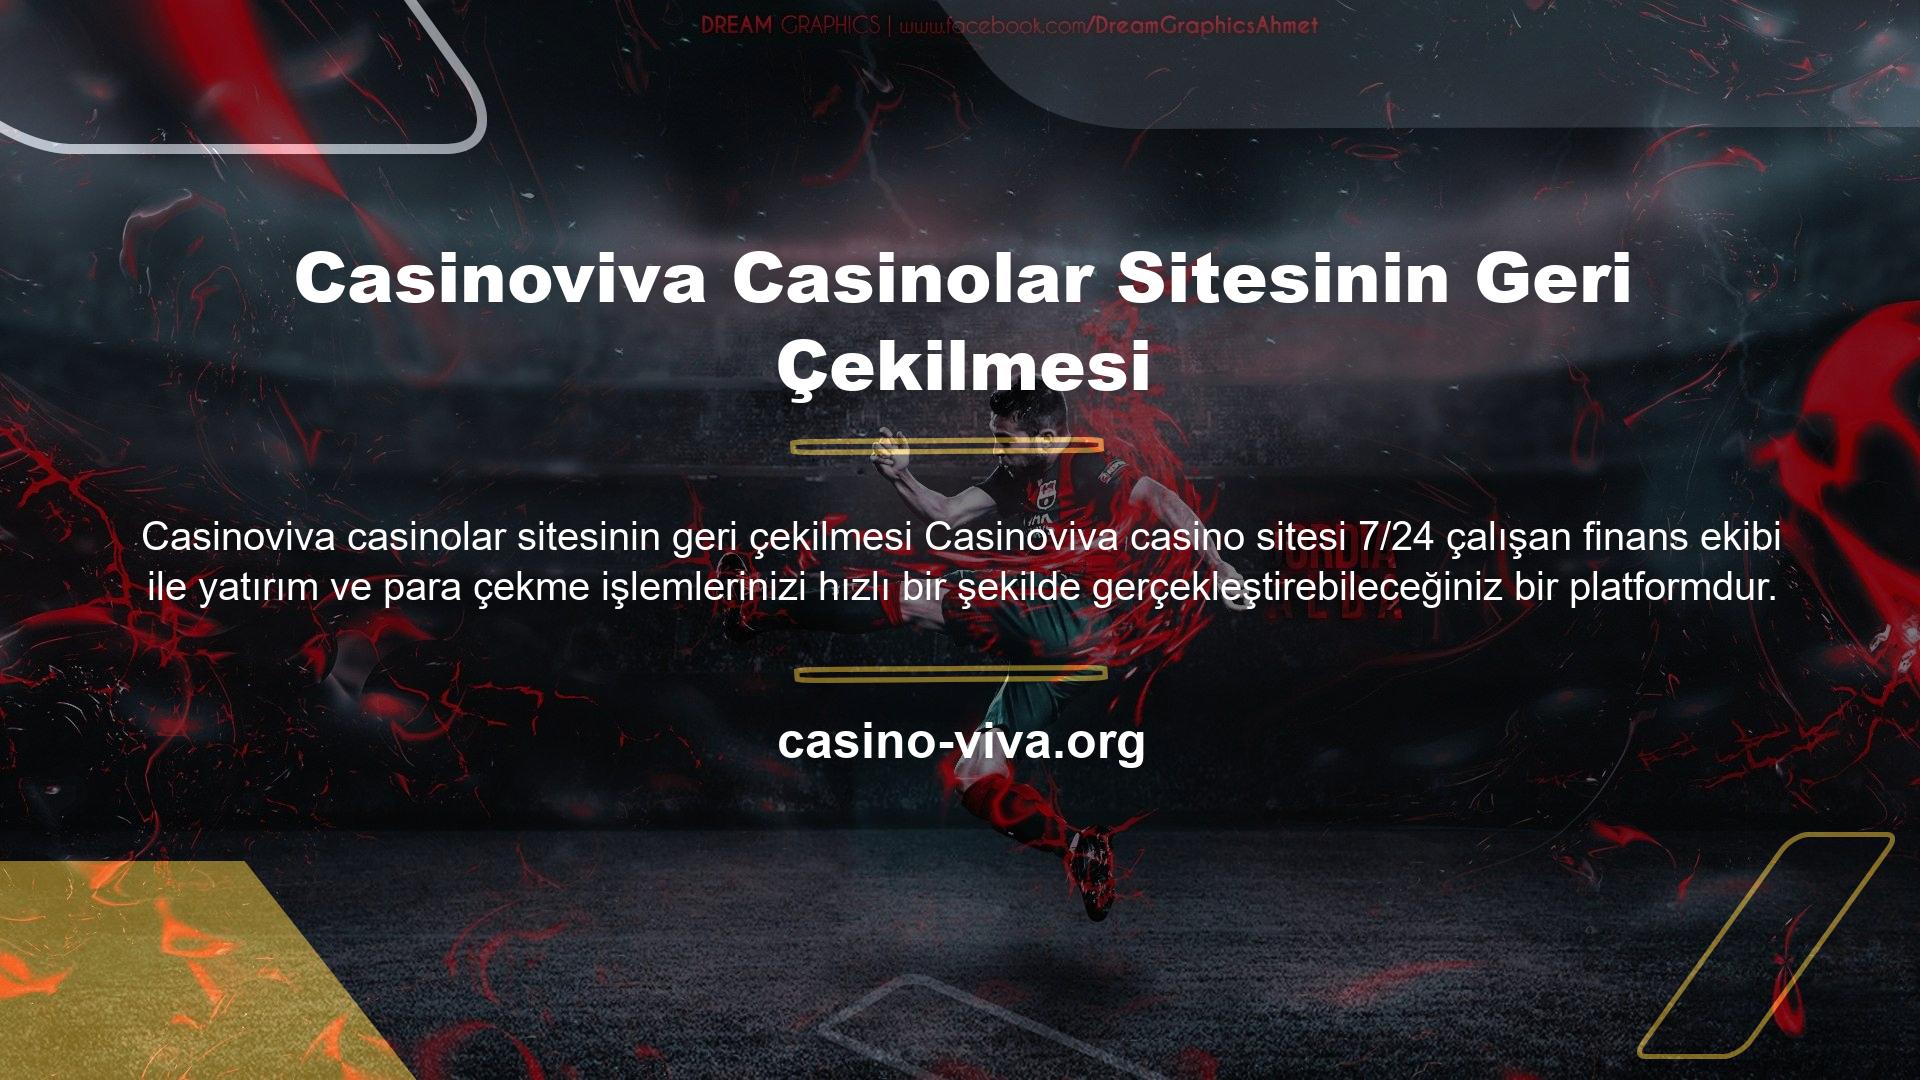 Casinoviva Casinolar Sitesinin Geri Çekilmesi